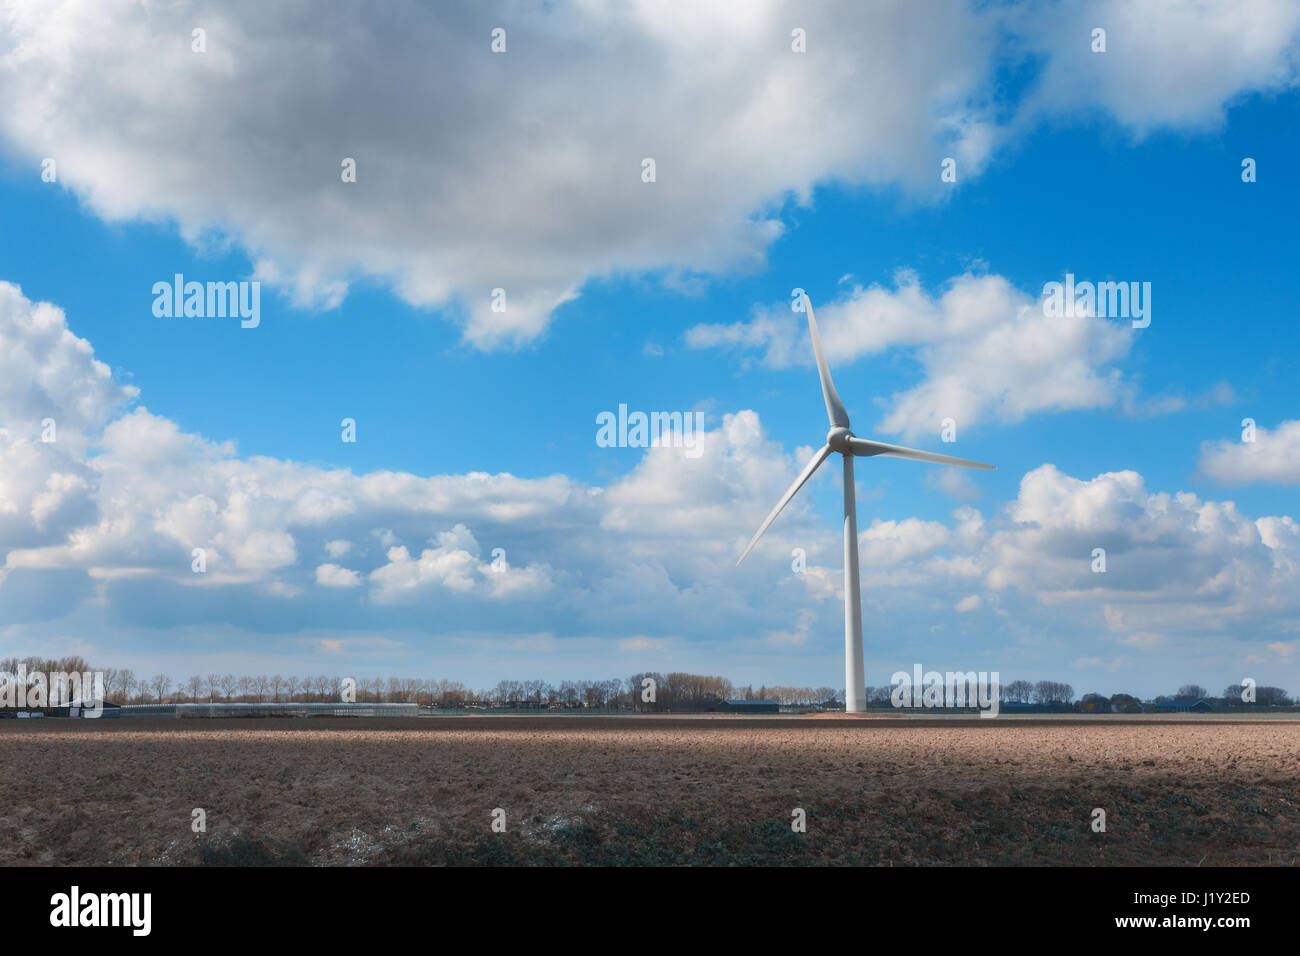 Éoliennes produisant de l'électricité. Les moulins à vent pour la production d'énergie électrique. Paysage aux moulins à vent production d'énergie sur le terrain Banque D'Images